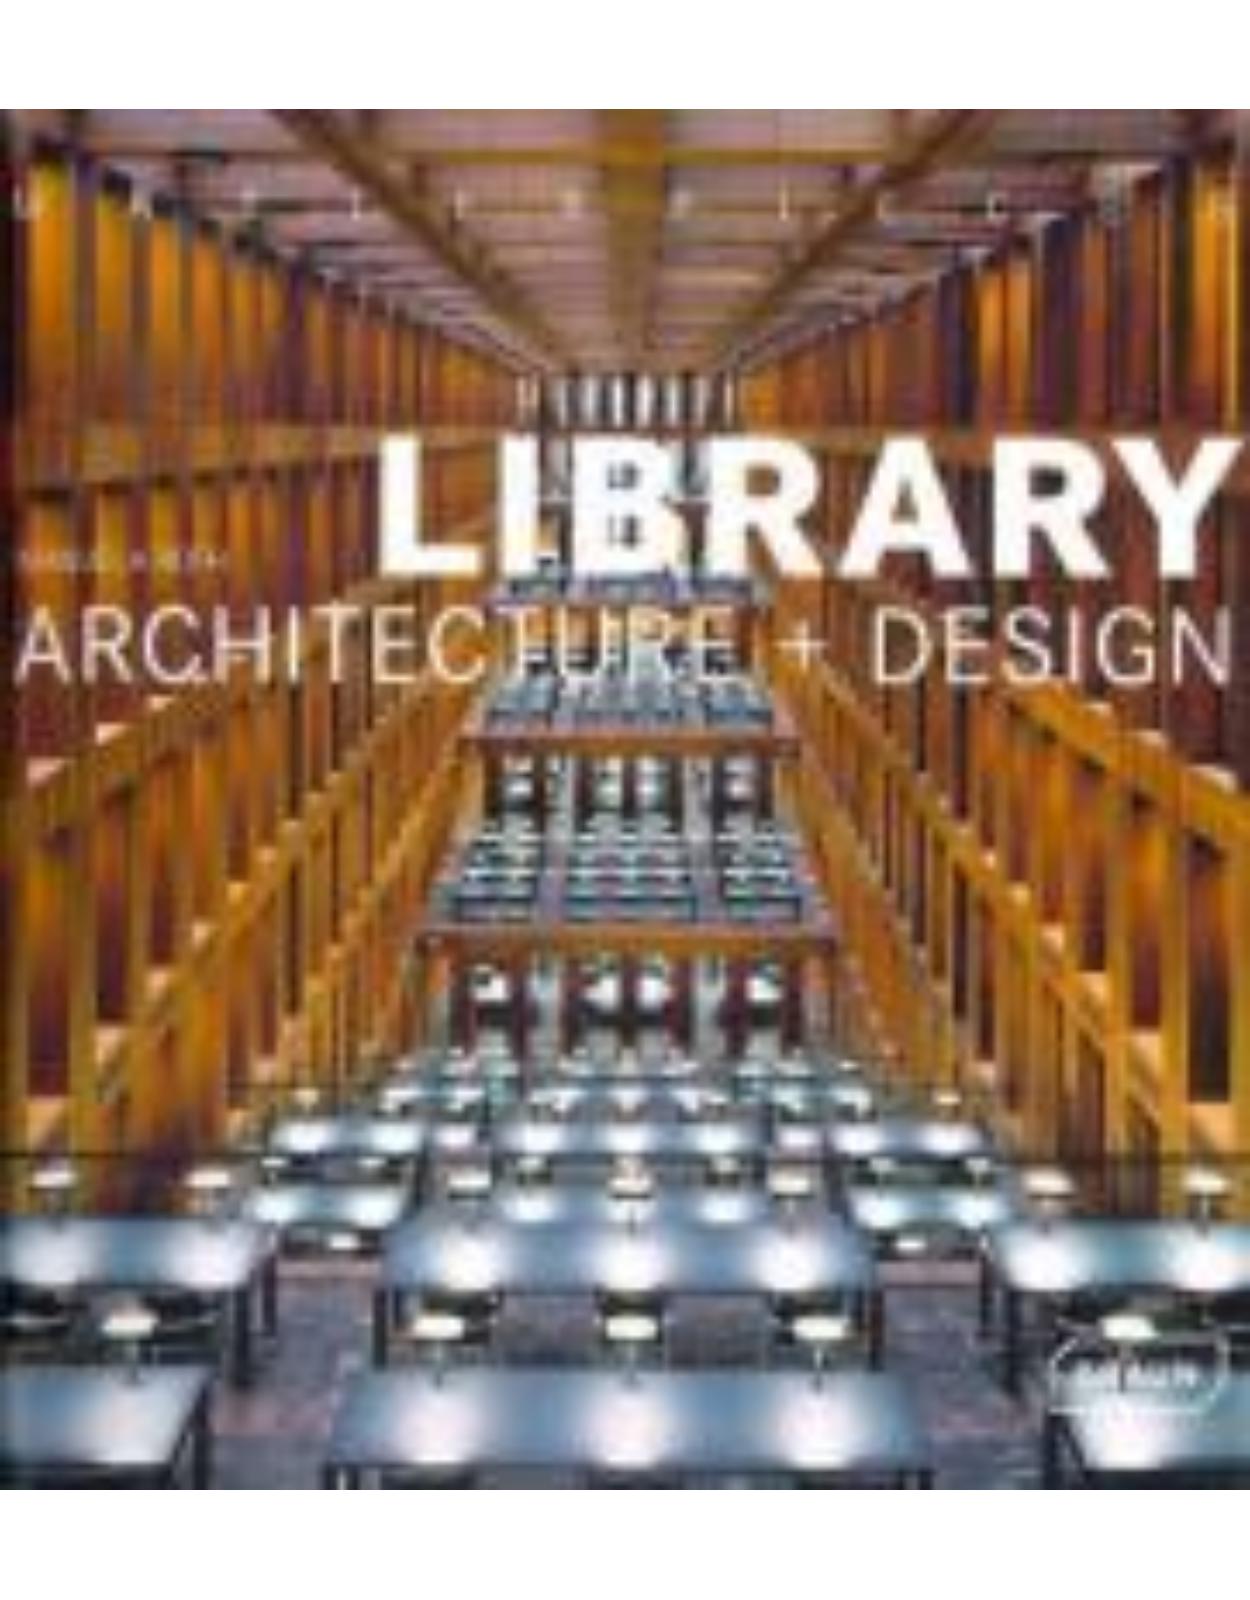 Library Architecture plus Design